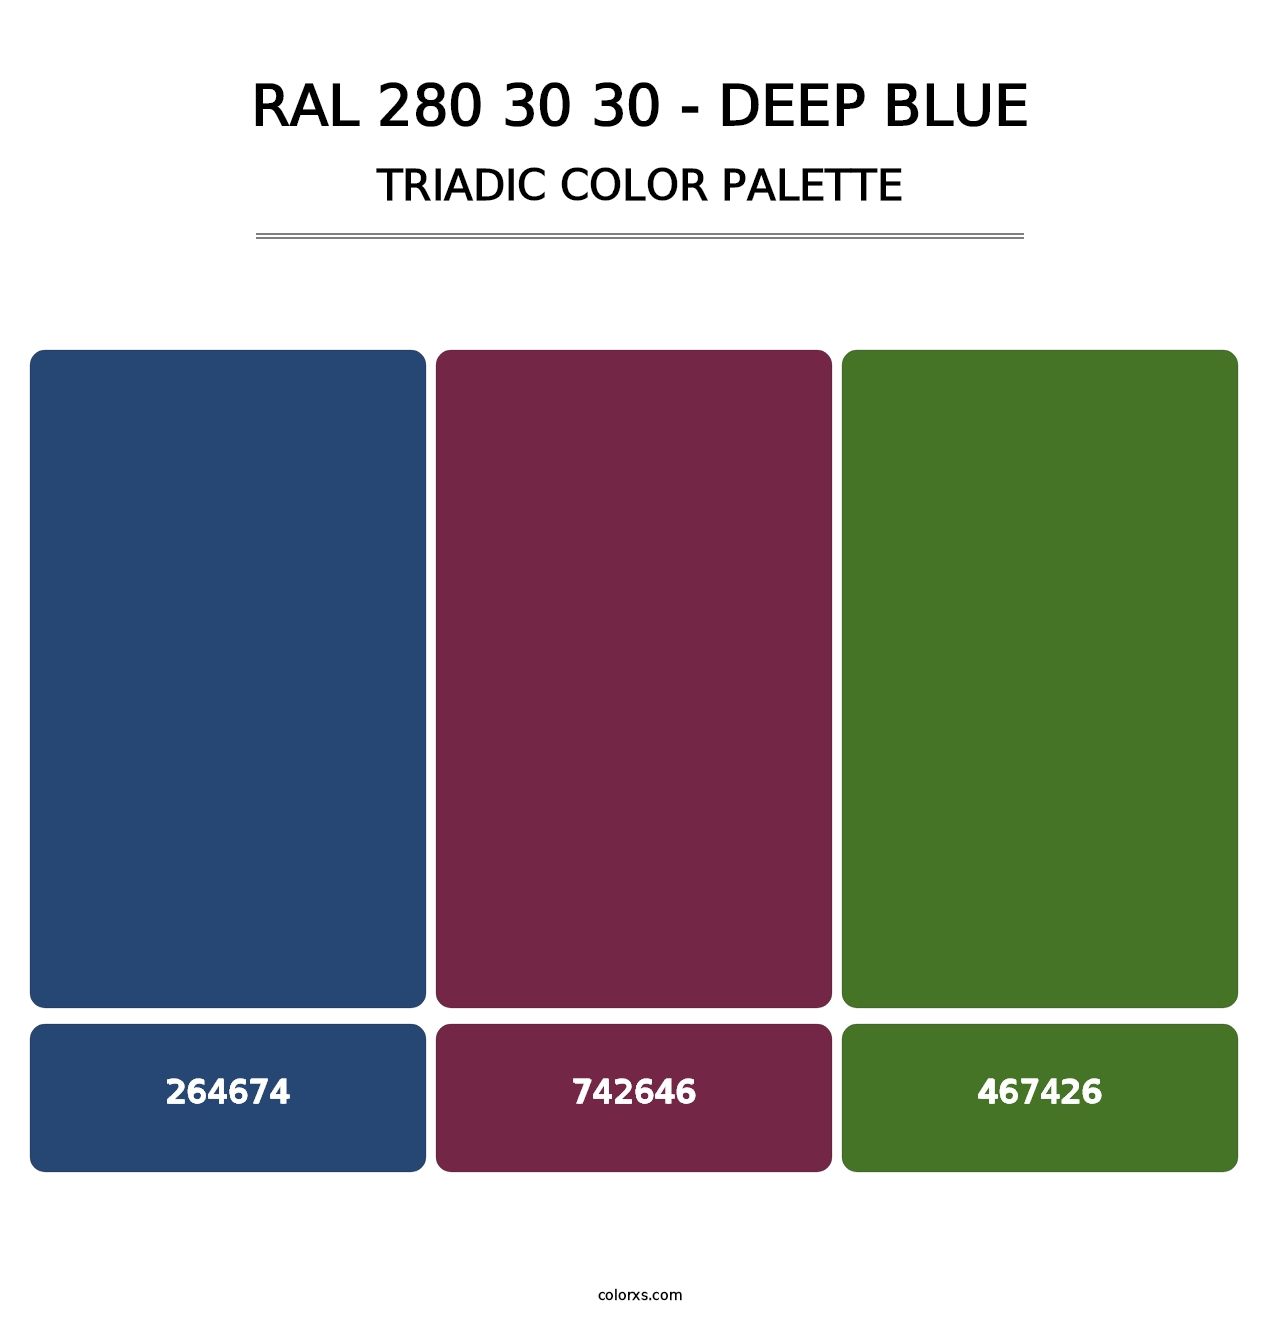 RAL 280 30 30 - Deep Blue - Triadic Color Palette